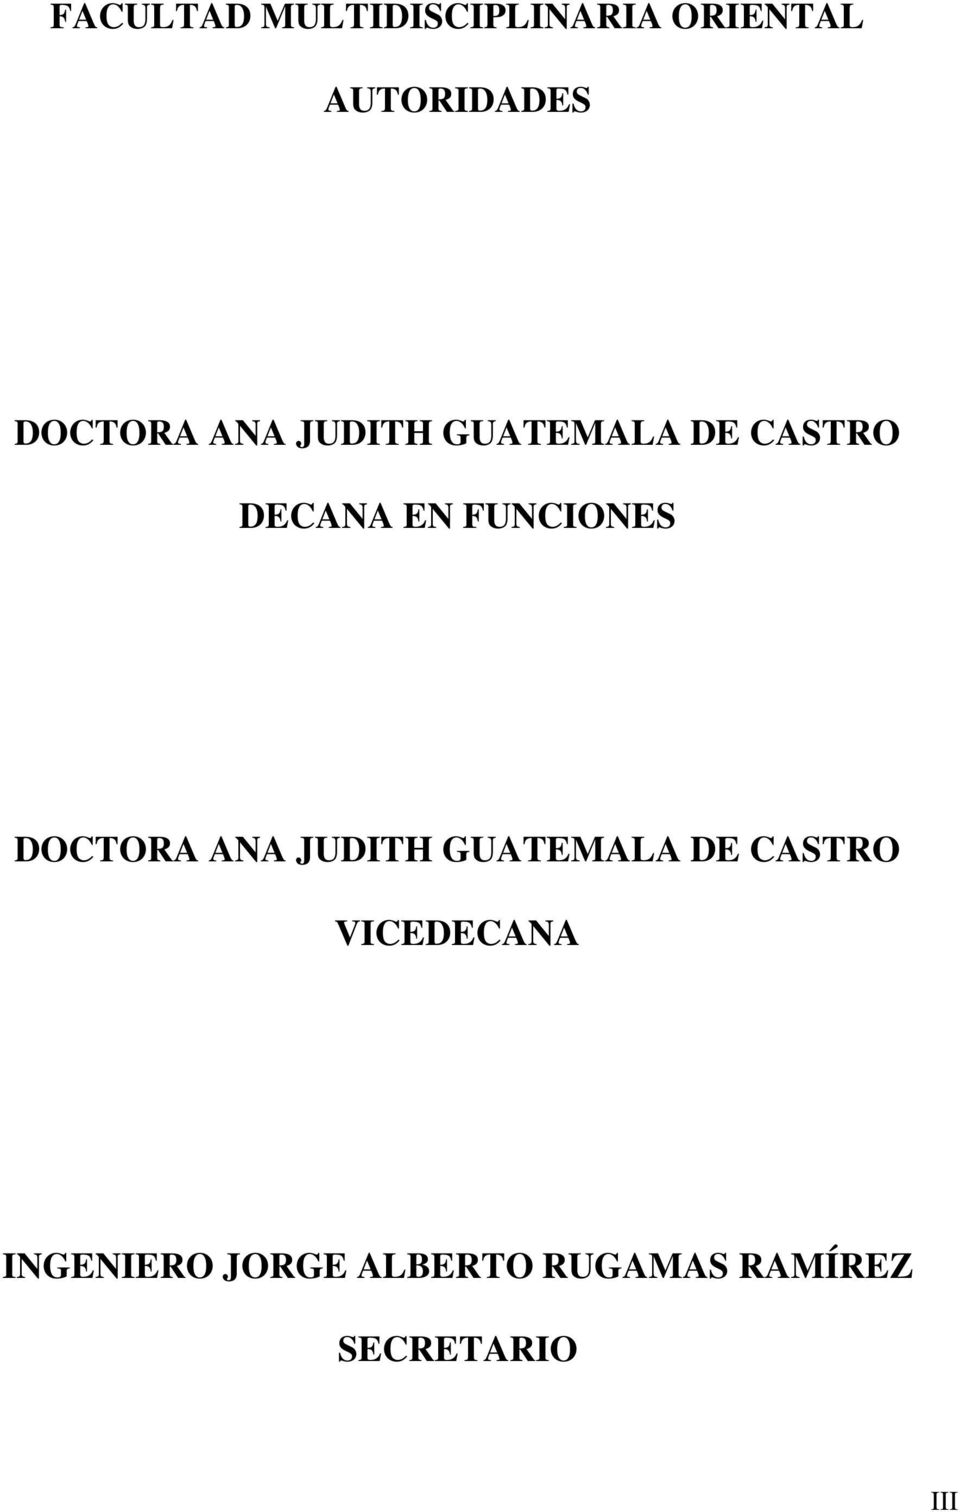 FUNCIONES DOCTORA ANA JUDITH GUATEMALA DE CASTRO